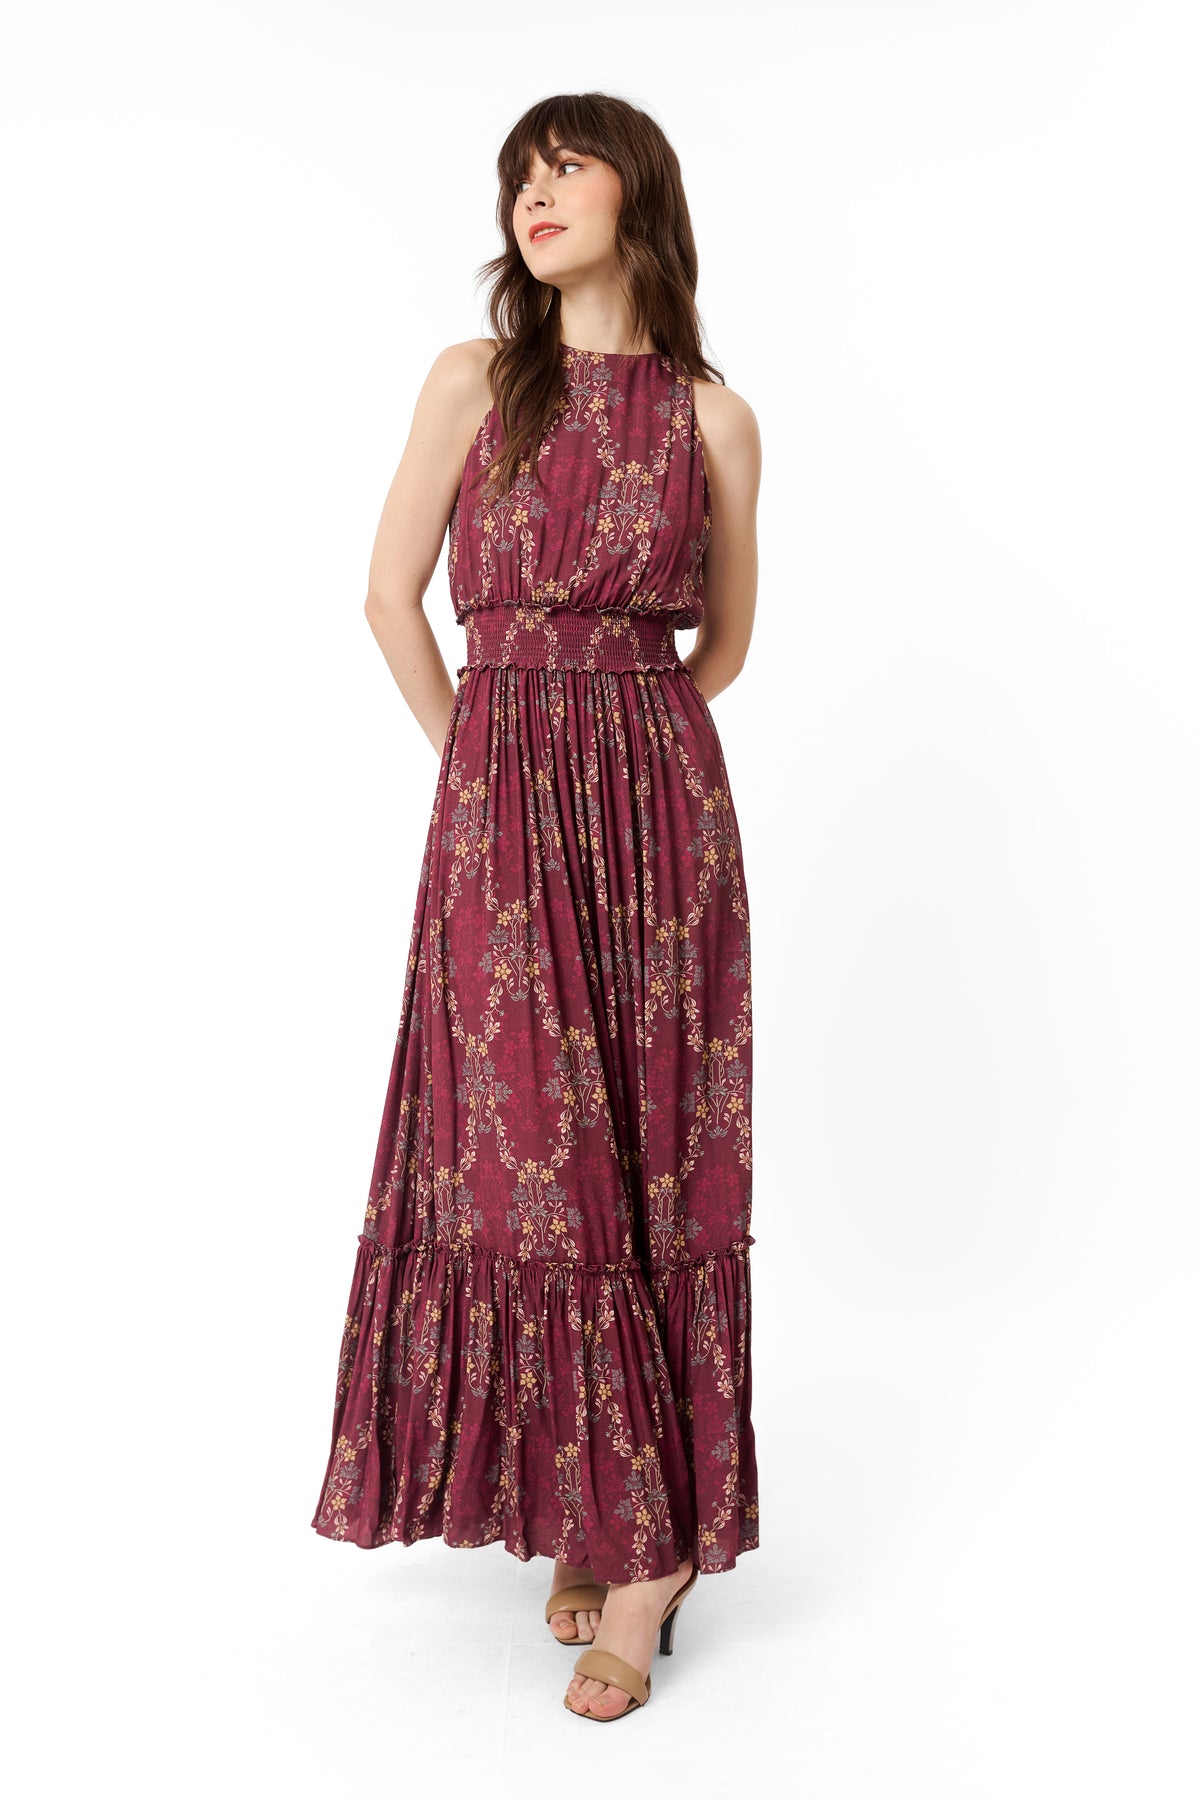 KORRA Dress in Sulur Maroon